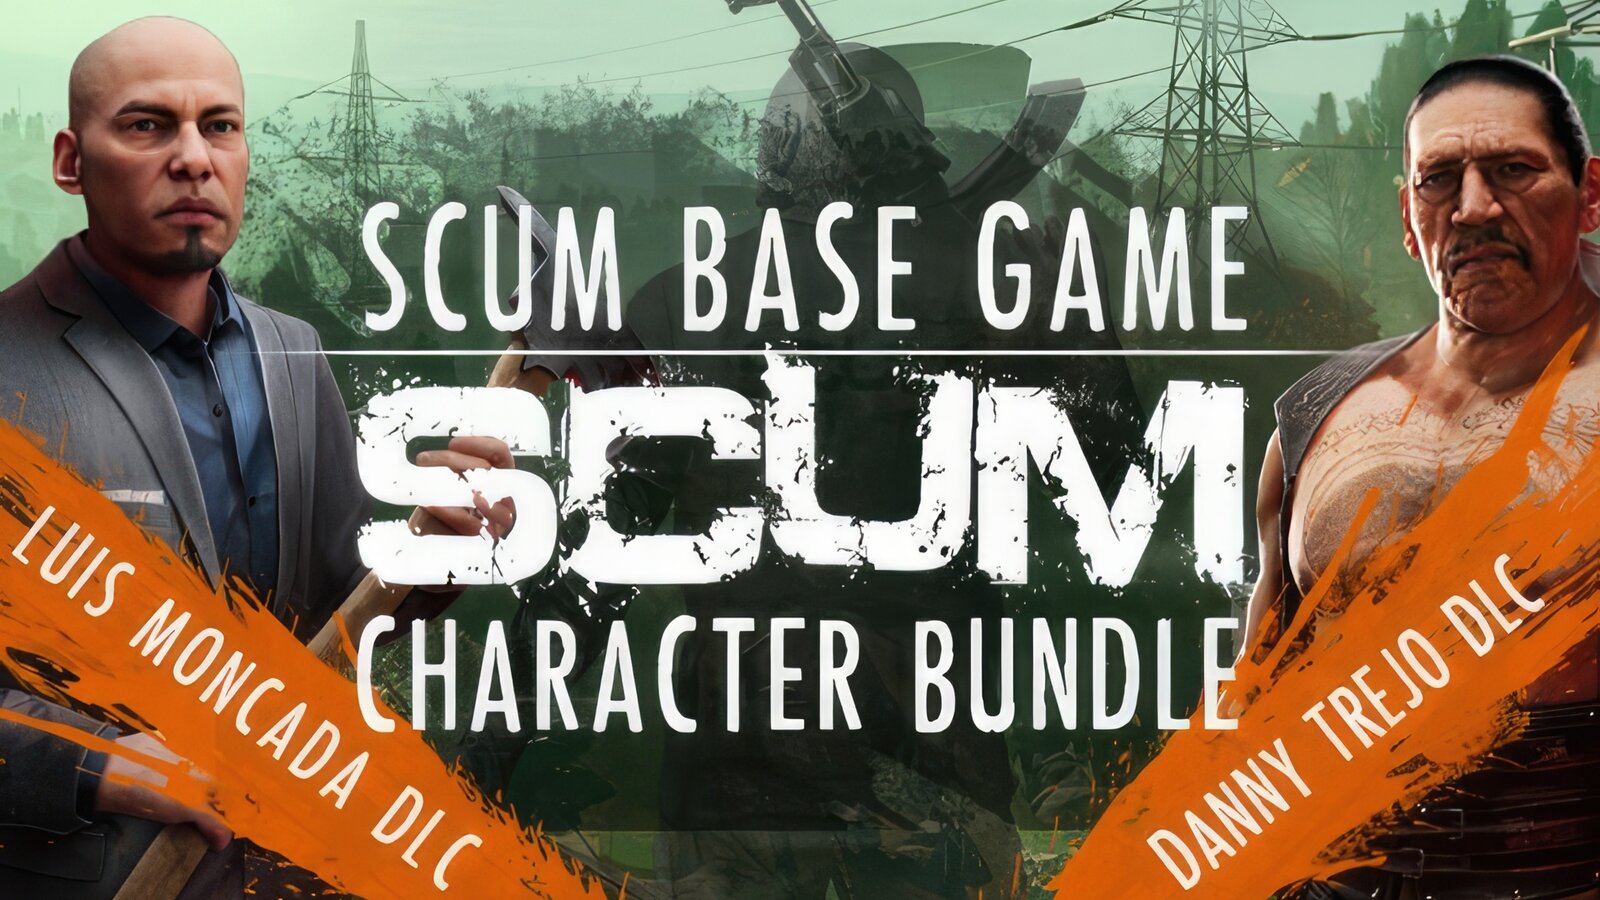 SCUM: Character Bundle